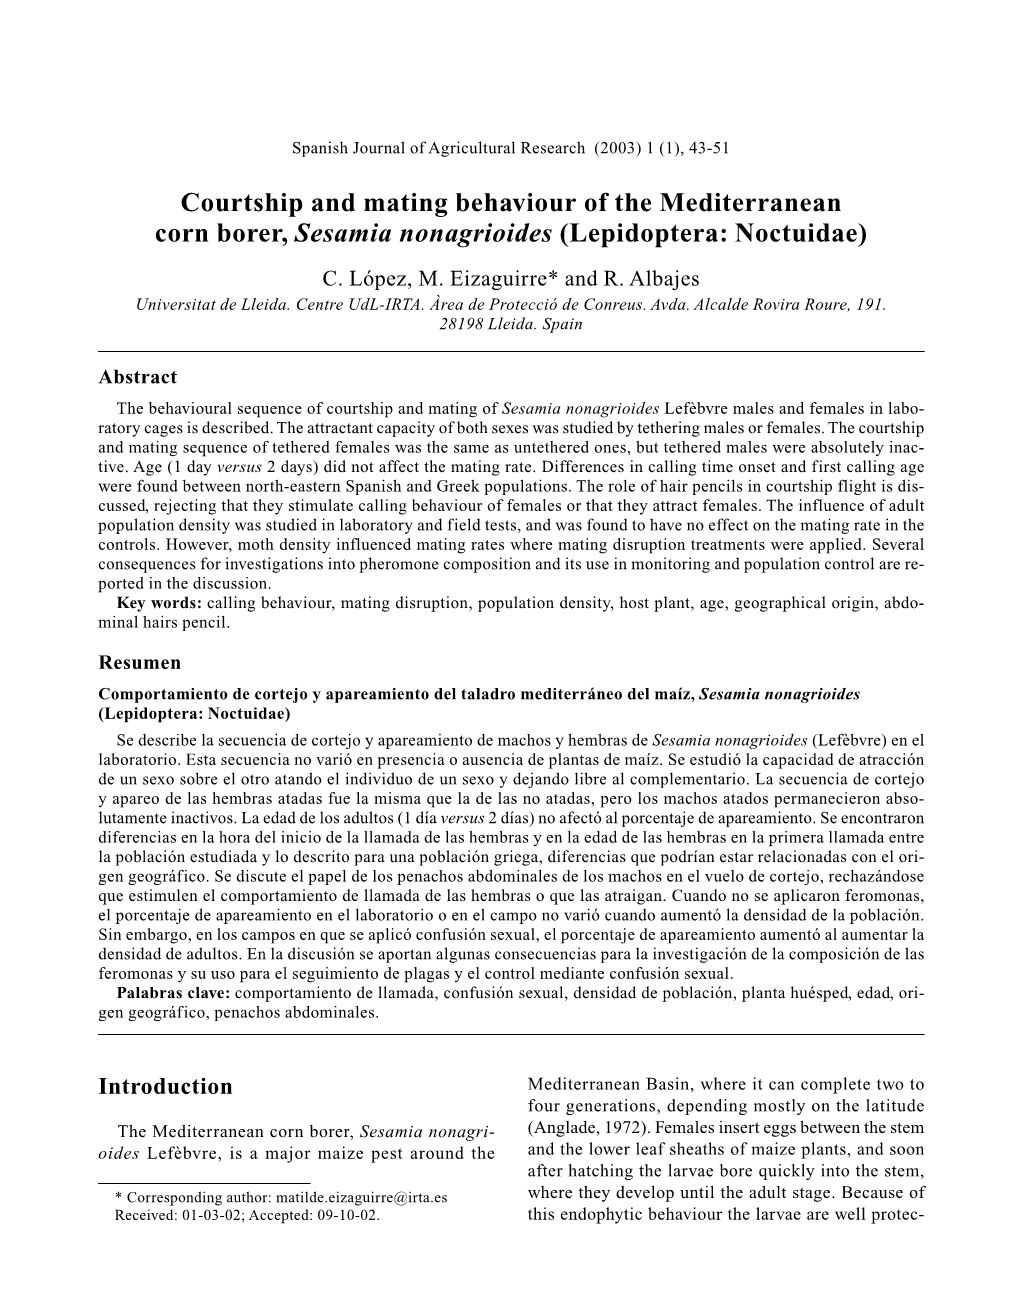 Courtship and Mating Behaviour of the Mediterranean Corn Borer, Sesamia Nonagrioides (Lepidoptera: Noctuidae) C